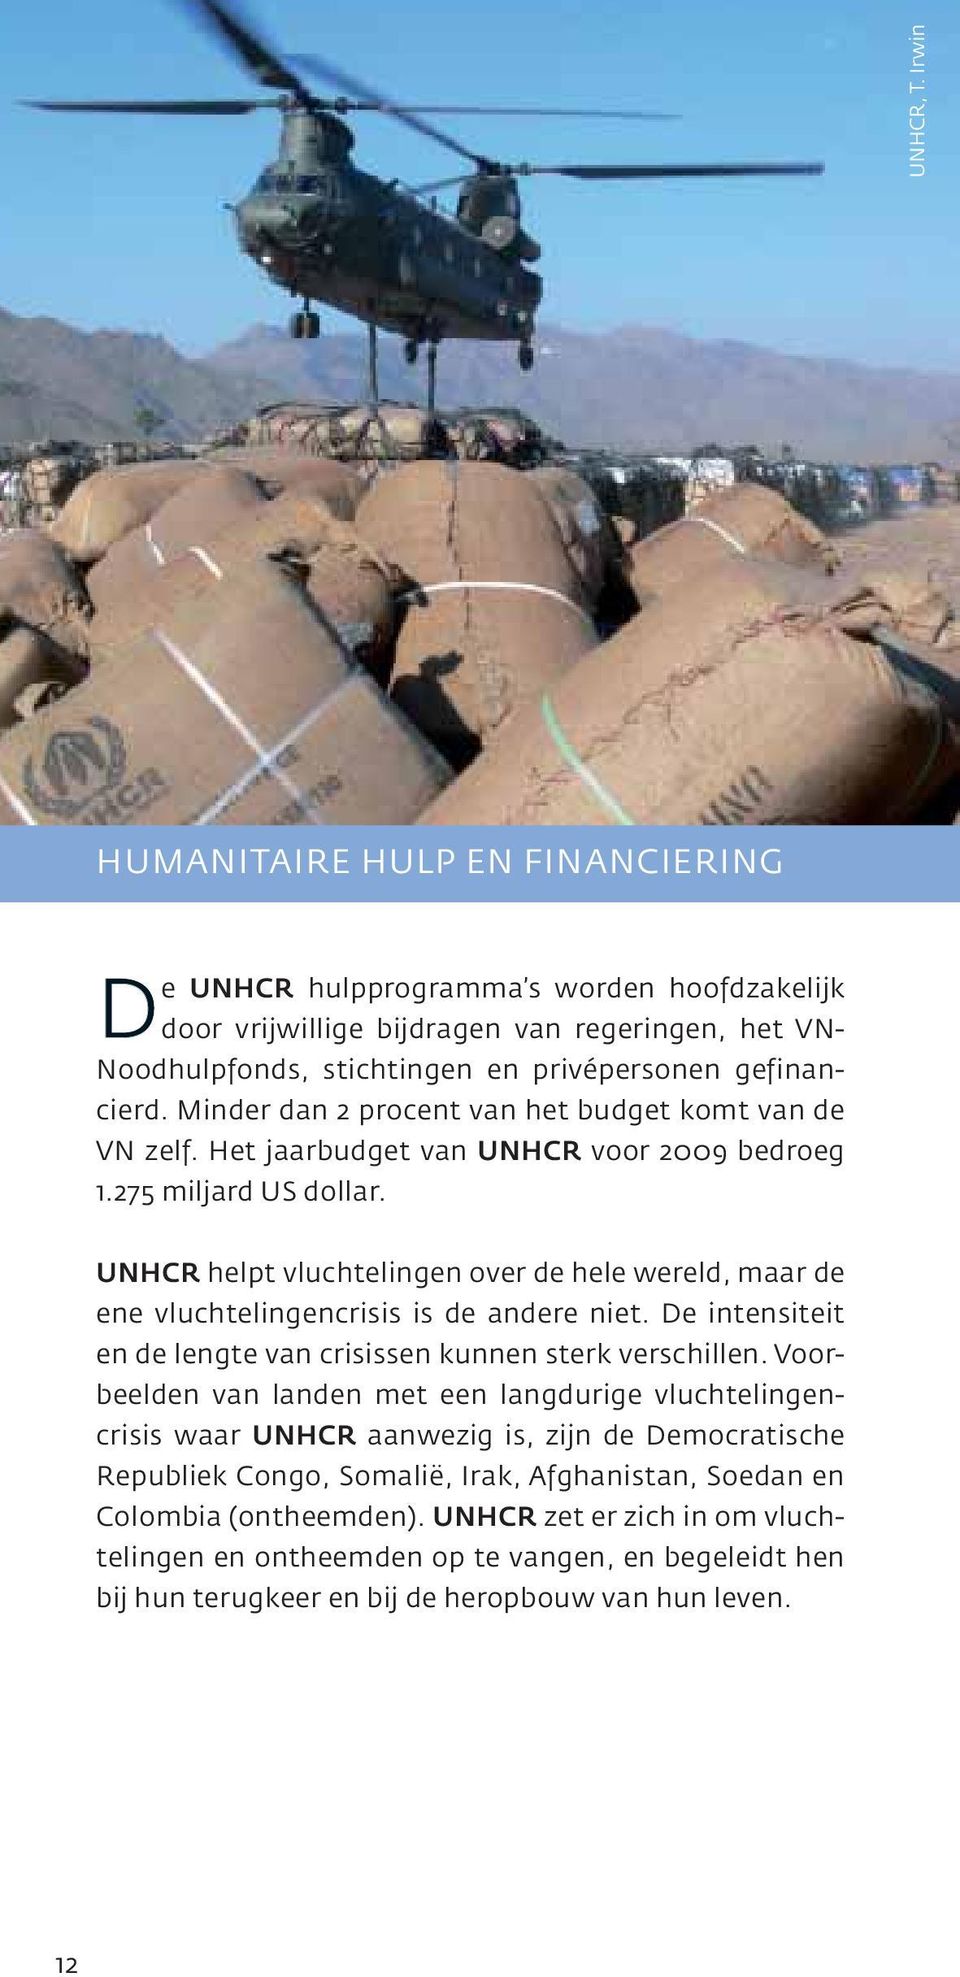 Minder dan 2 procent van het budget komt van de VN zelf. Het jaarbudget van UNHCR voor 2009 bedroeg 1.275 miljard US dollar.